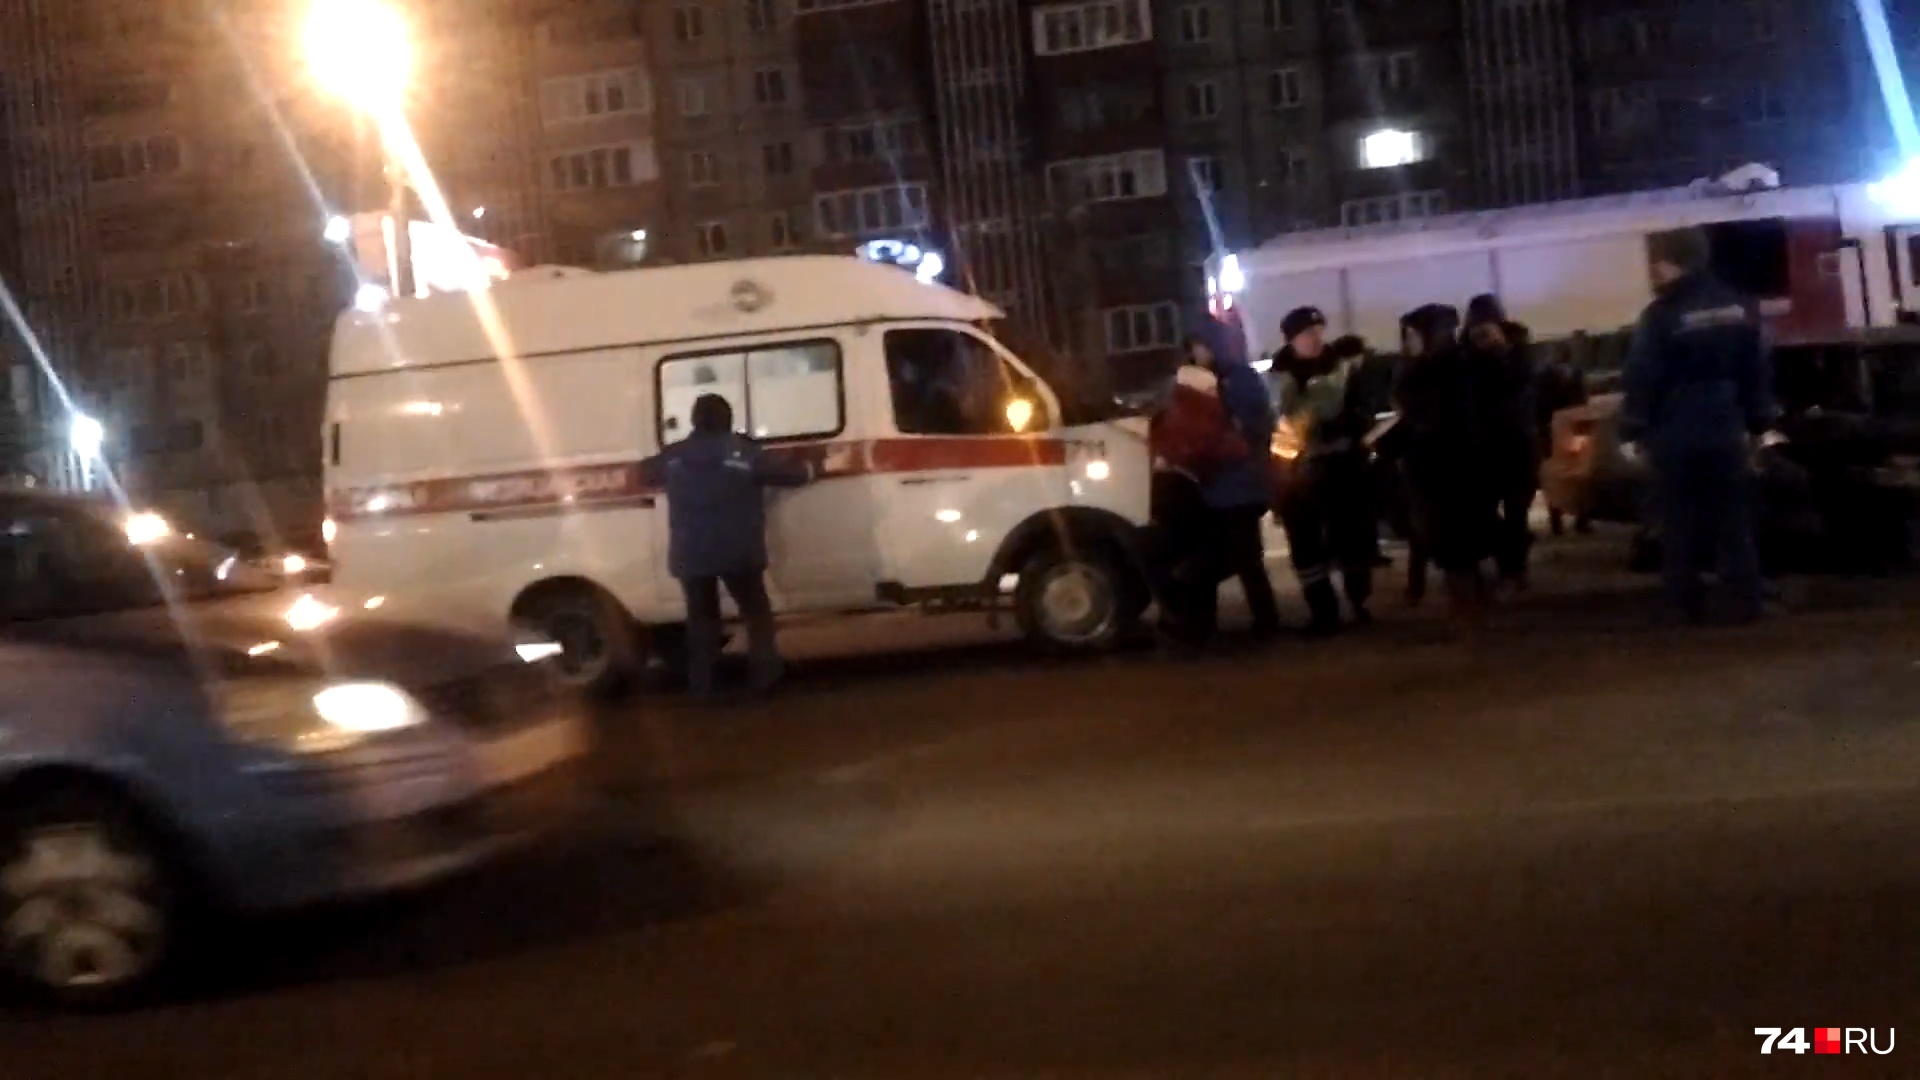 Бесправник вылетел на встречку: в ночном ДТП у рынка в Челябинске пострадали четыре пассажира такси